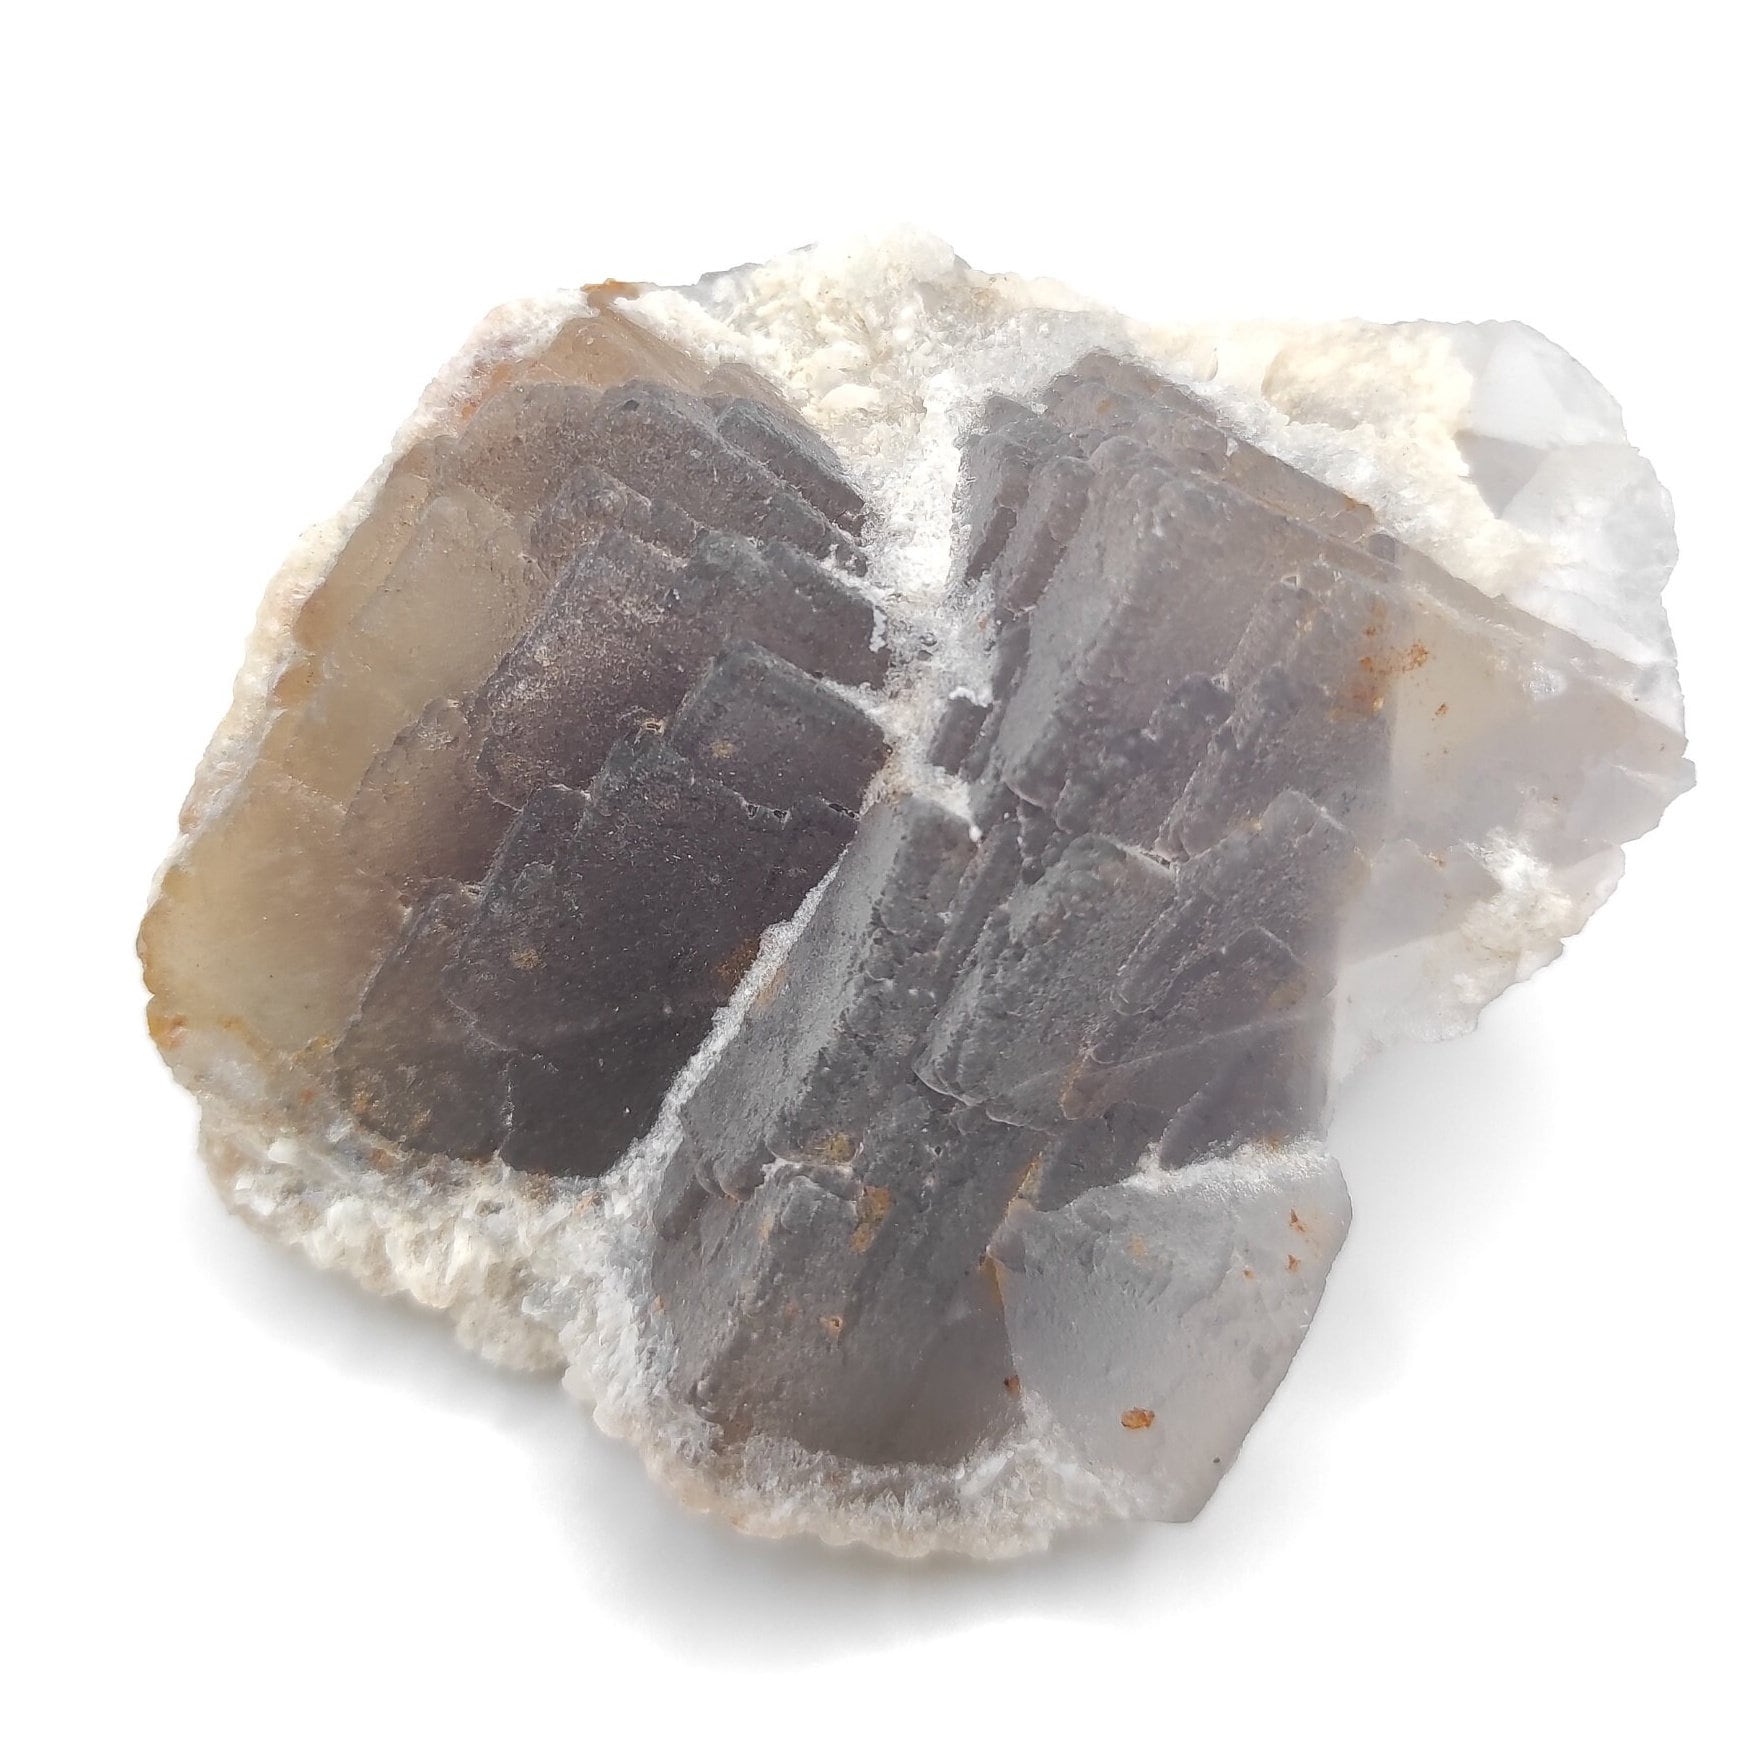 292g Grey & Purple Fluorite Crystal Cluster Natural Raw Purple Fluorite Mineral Specimen Balochistan Pakistan Cubic Fluorite Crystal Rock